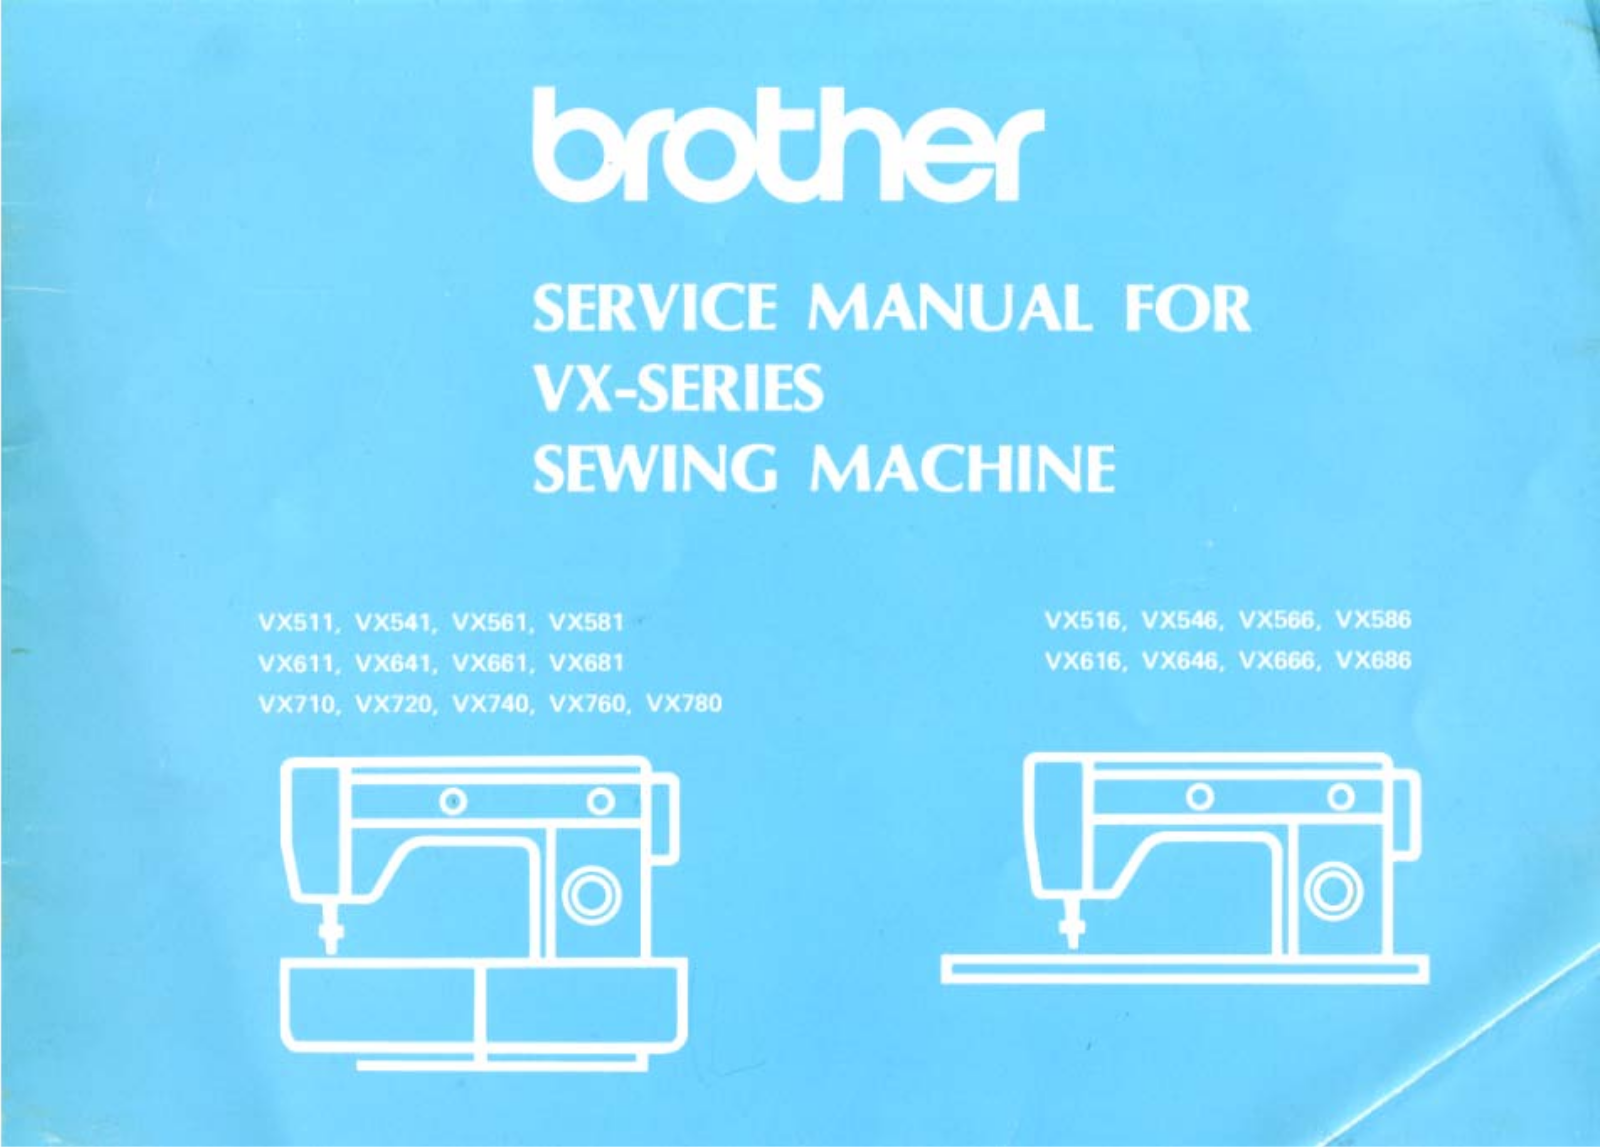 Brother VX 511, VX 541, VX 561, VX 661 Service Manual